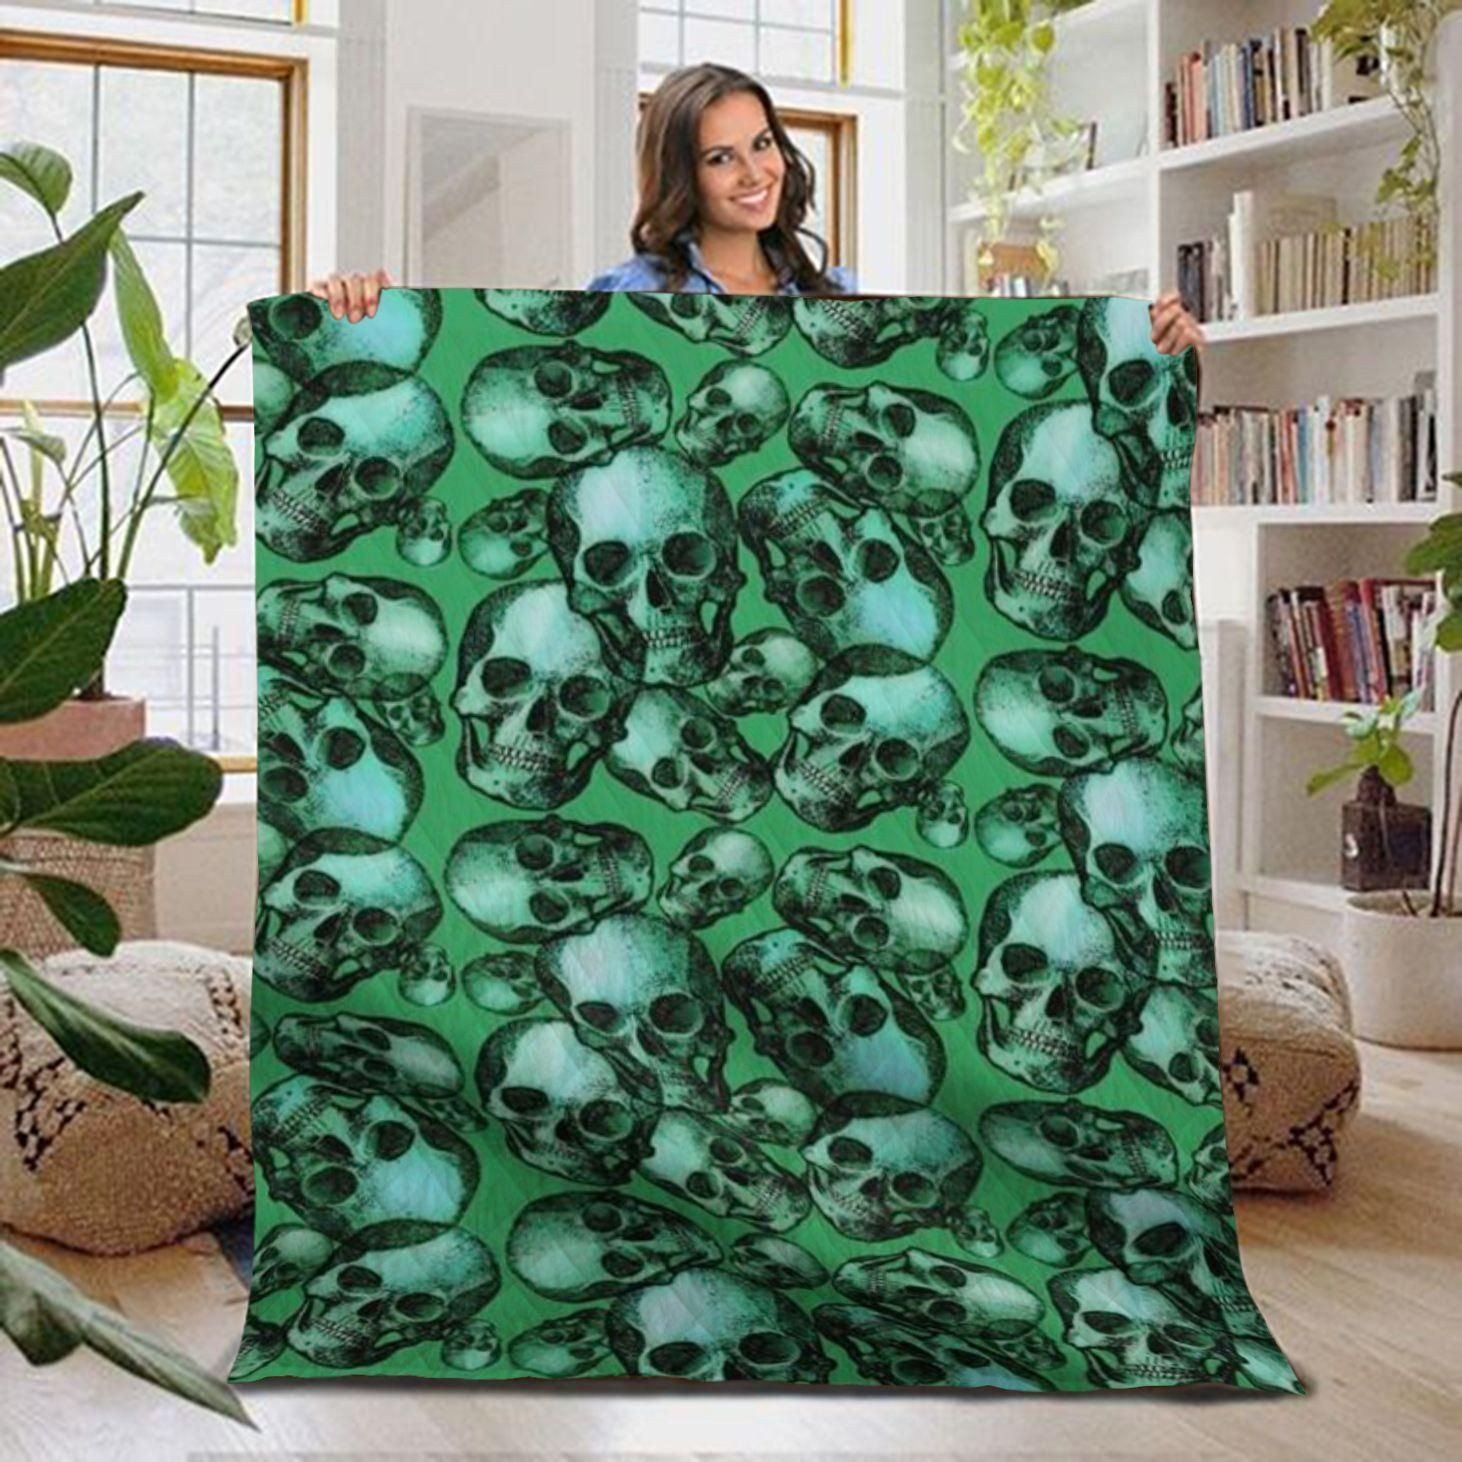 Green Skull Quilt Blanket